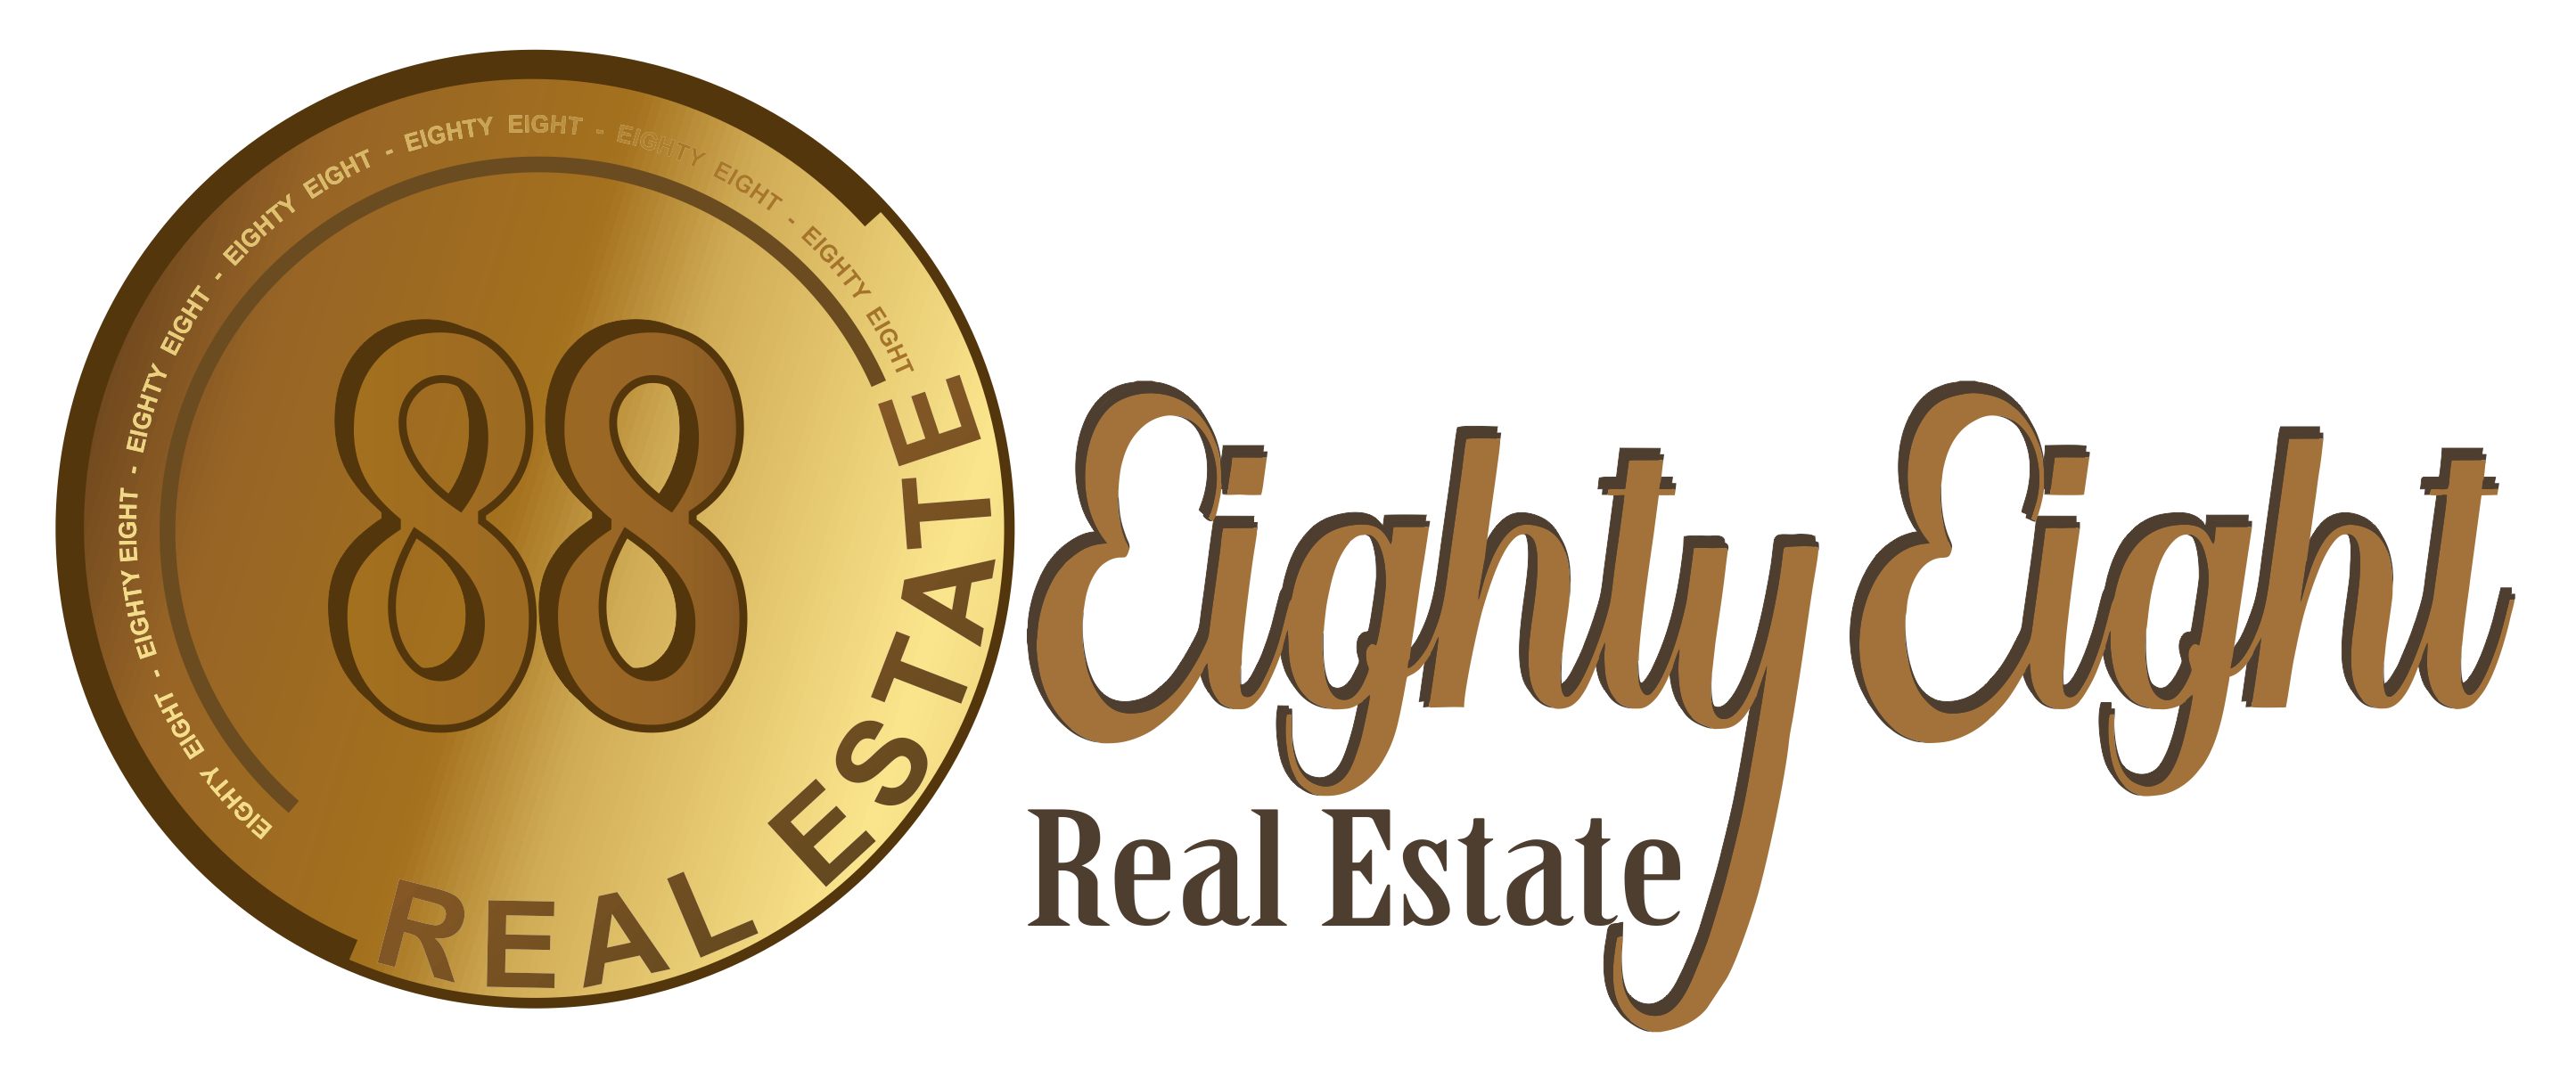 88 Real Estate - DOCKLANDS - Real Estate Agency